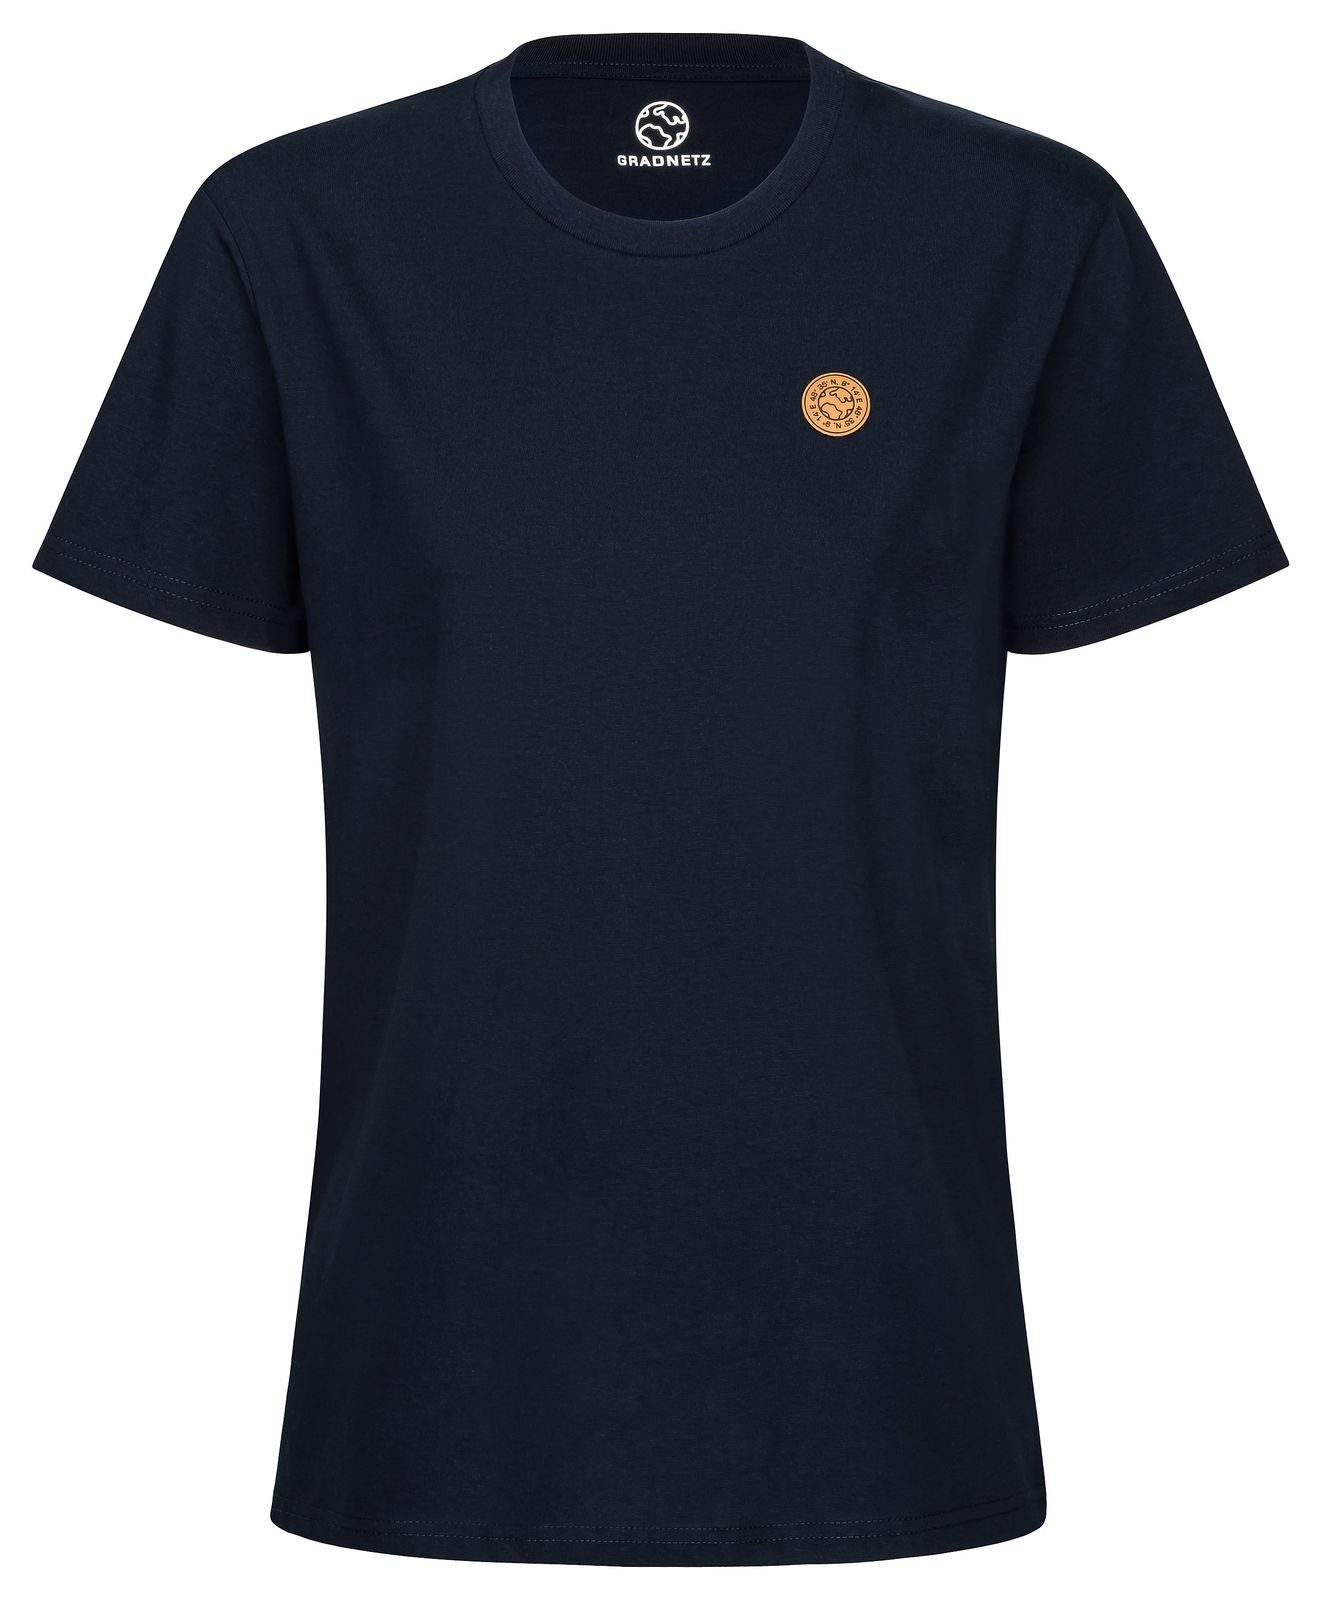 Gradnetz T-Shirt basic fair leather Biobaumwolle & unisex dunkelblau nachhaltig 100